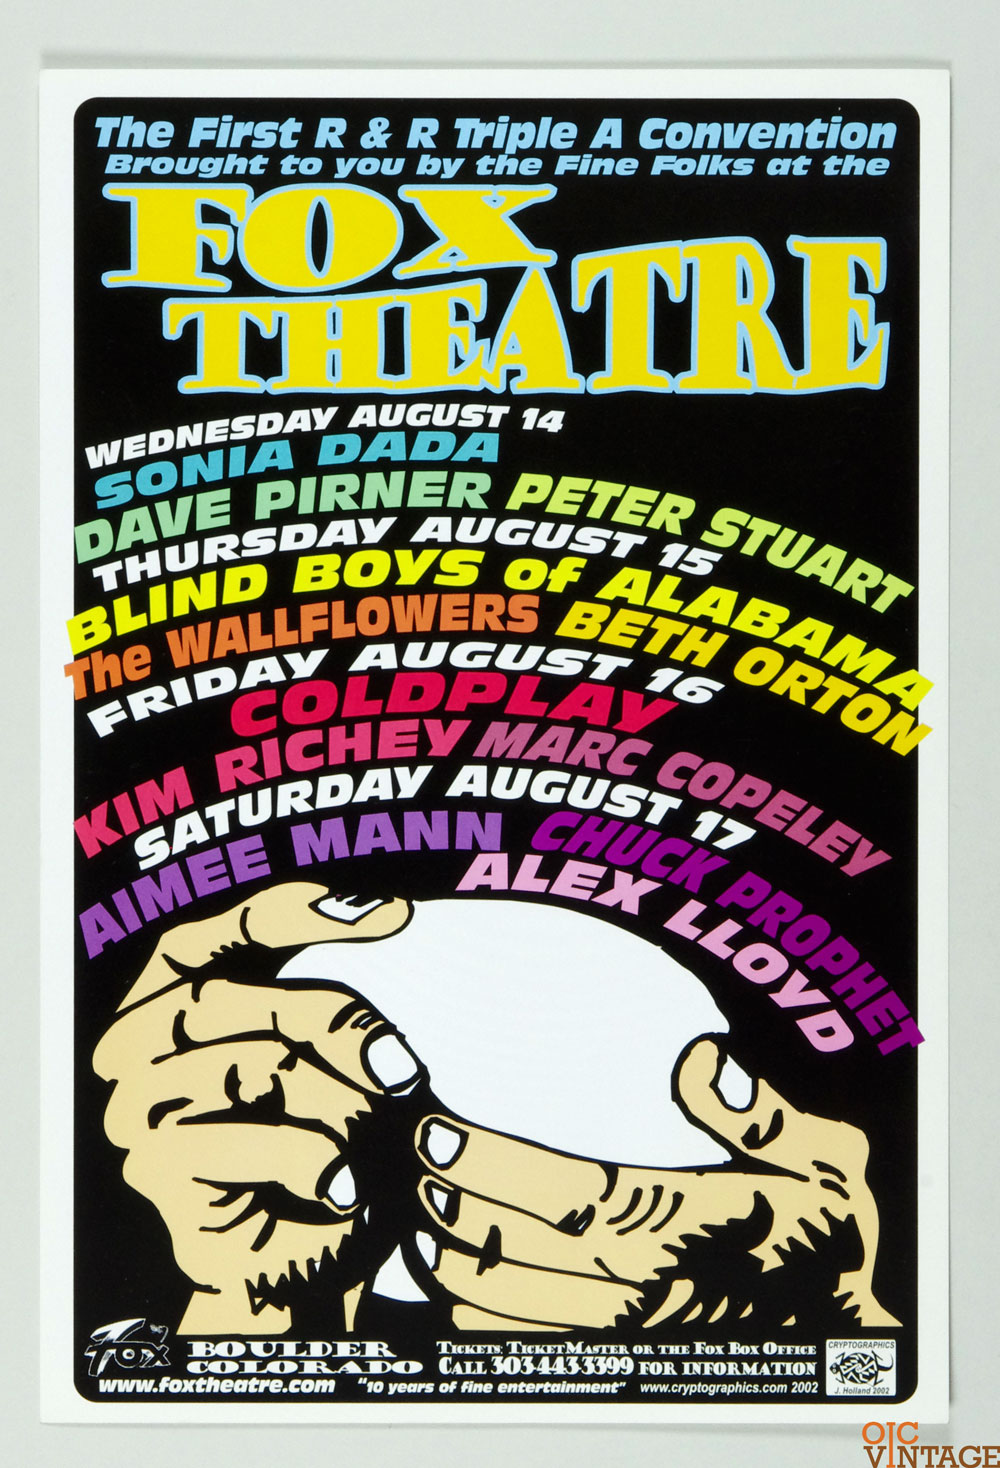 Coldplay Sonia Dada Aimee Mann Poster 2002 Aug Fox Theatre Boulder